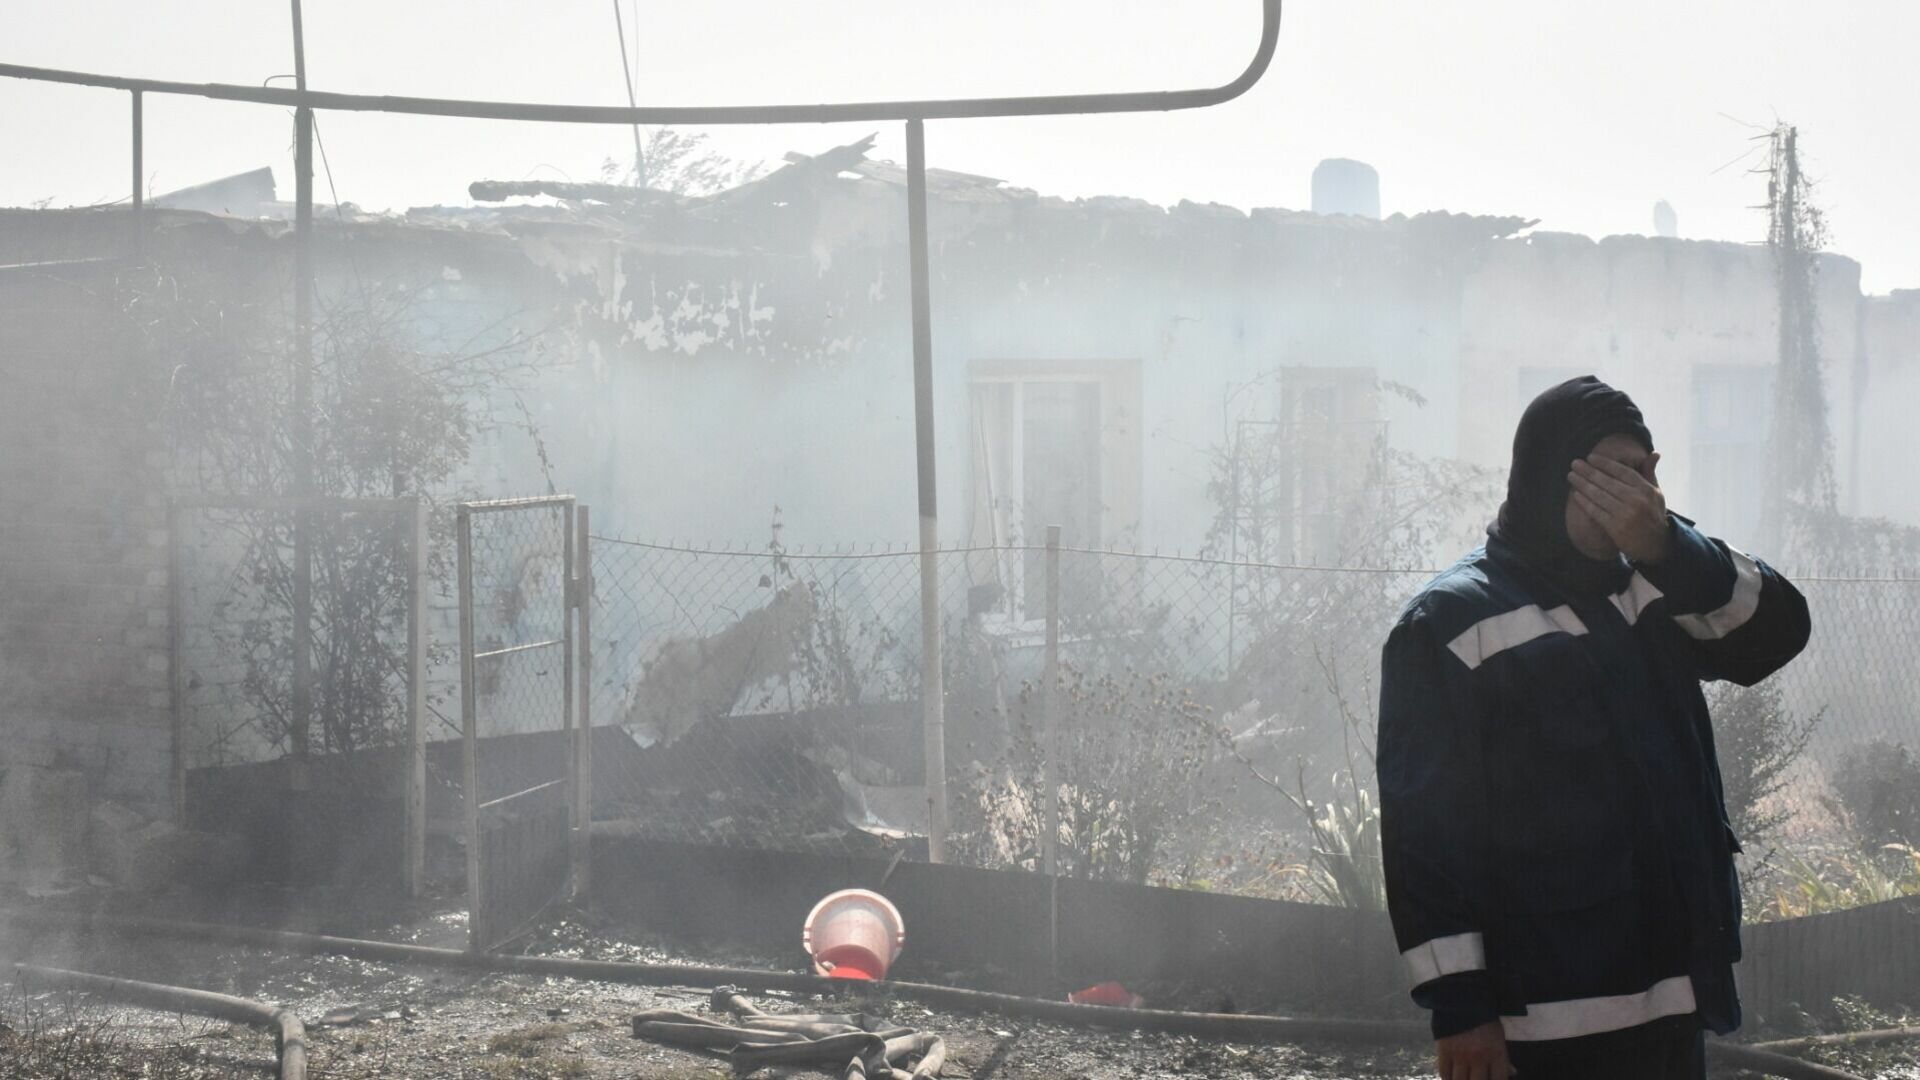 СНТ и сухая растительность загорелись 25 апреля в Тюмени